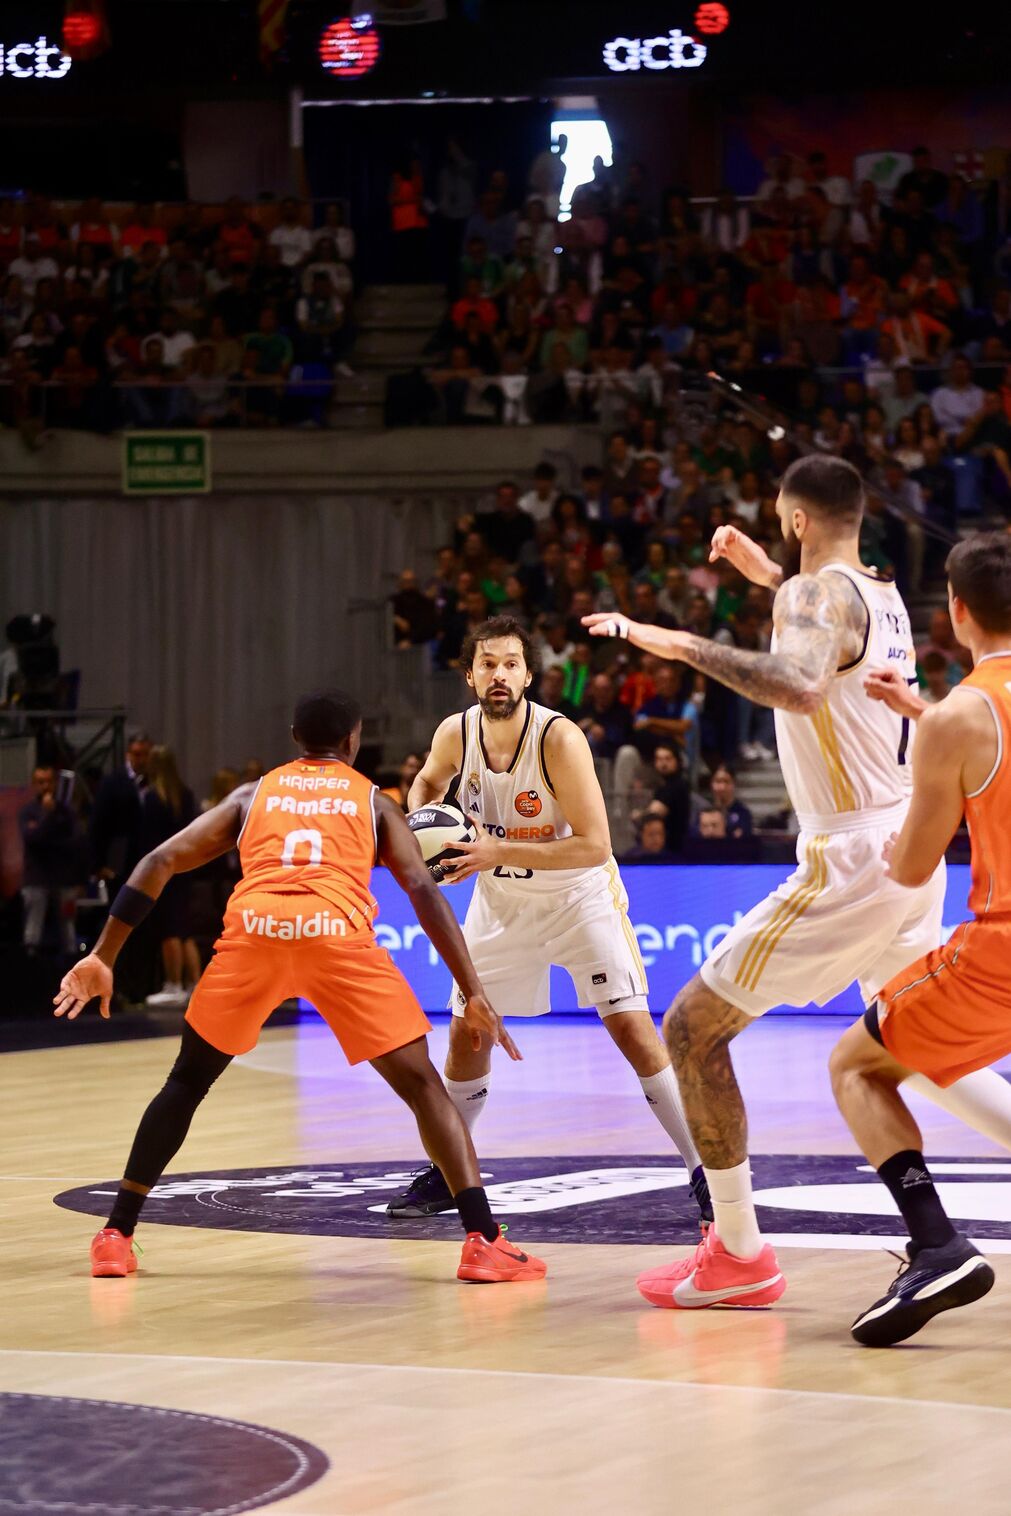 El Real Madrid - Valencia Basket de Copa del Rey, en fotos